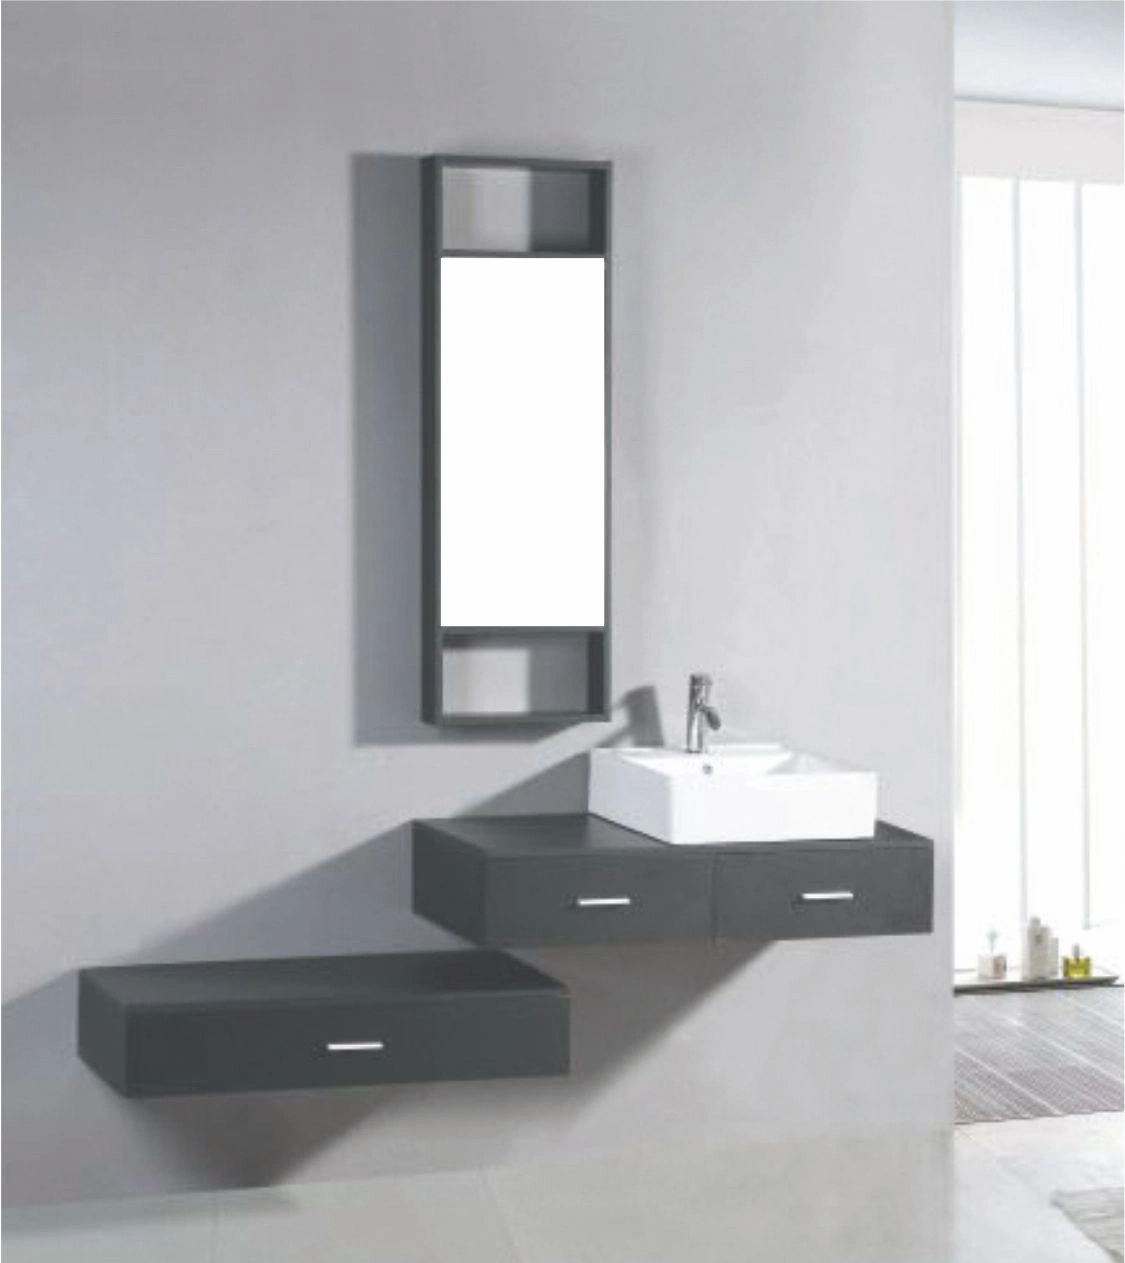 72 " Double lavabo Salle de bains moderne de la vanité ensemble du Cabinet